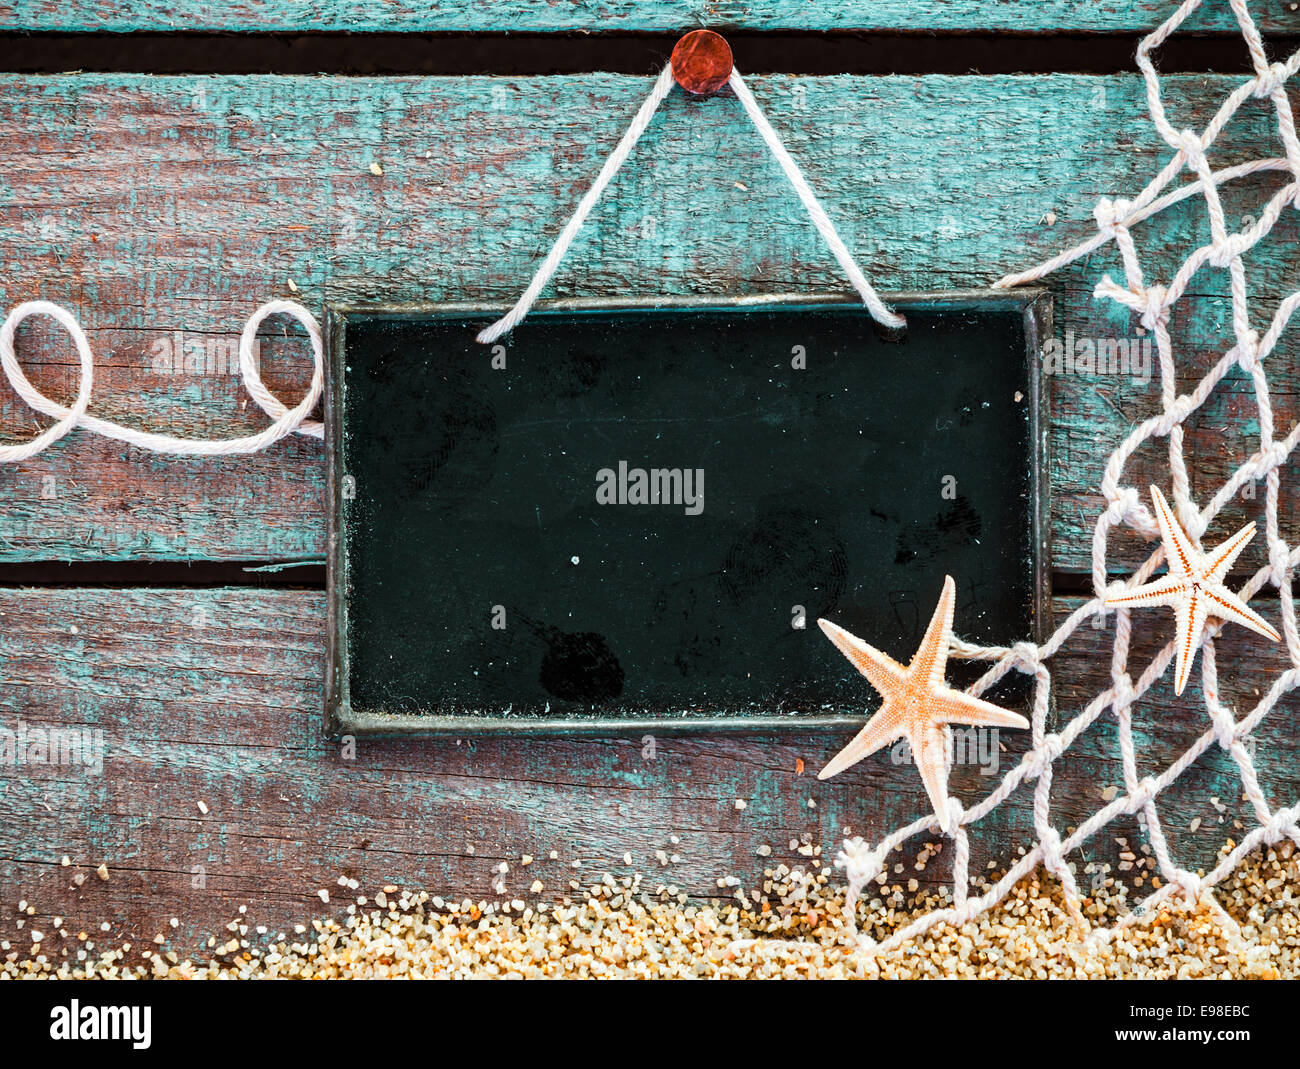 Todavía la vida marina con una pizarra en blanco letrero con copyspace para su texto, menú o anuncio decorado con red de pesca y Starfish sobre tablas de madera pintadas de azul sobre la arena del mar Foto de stock